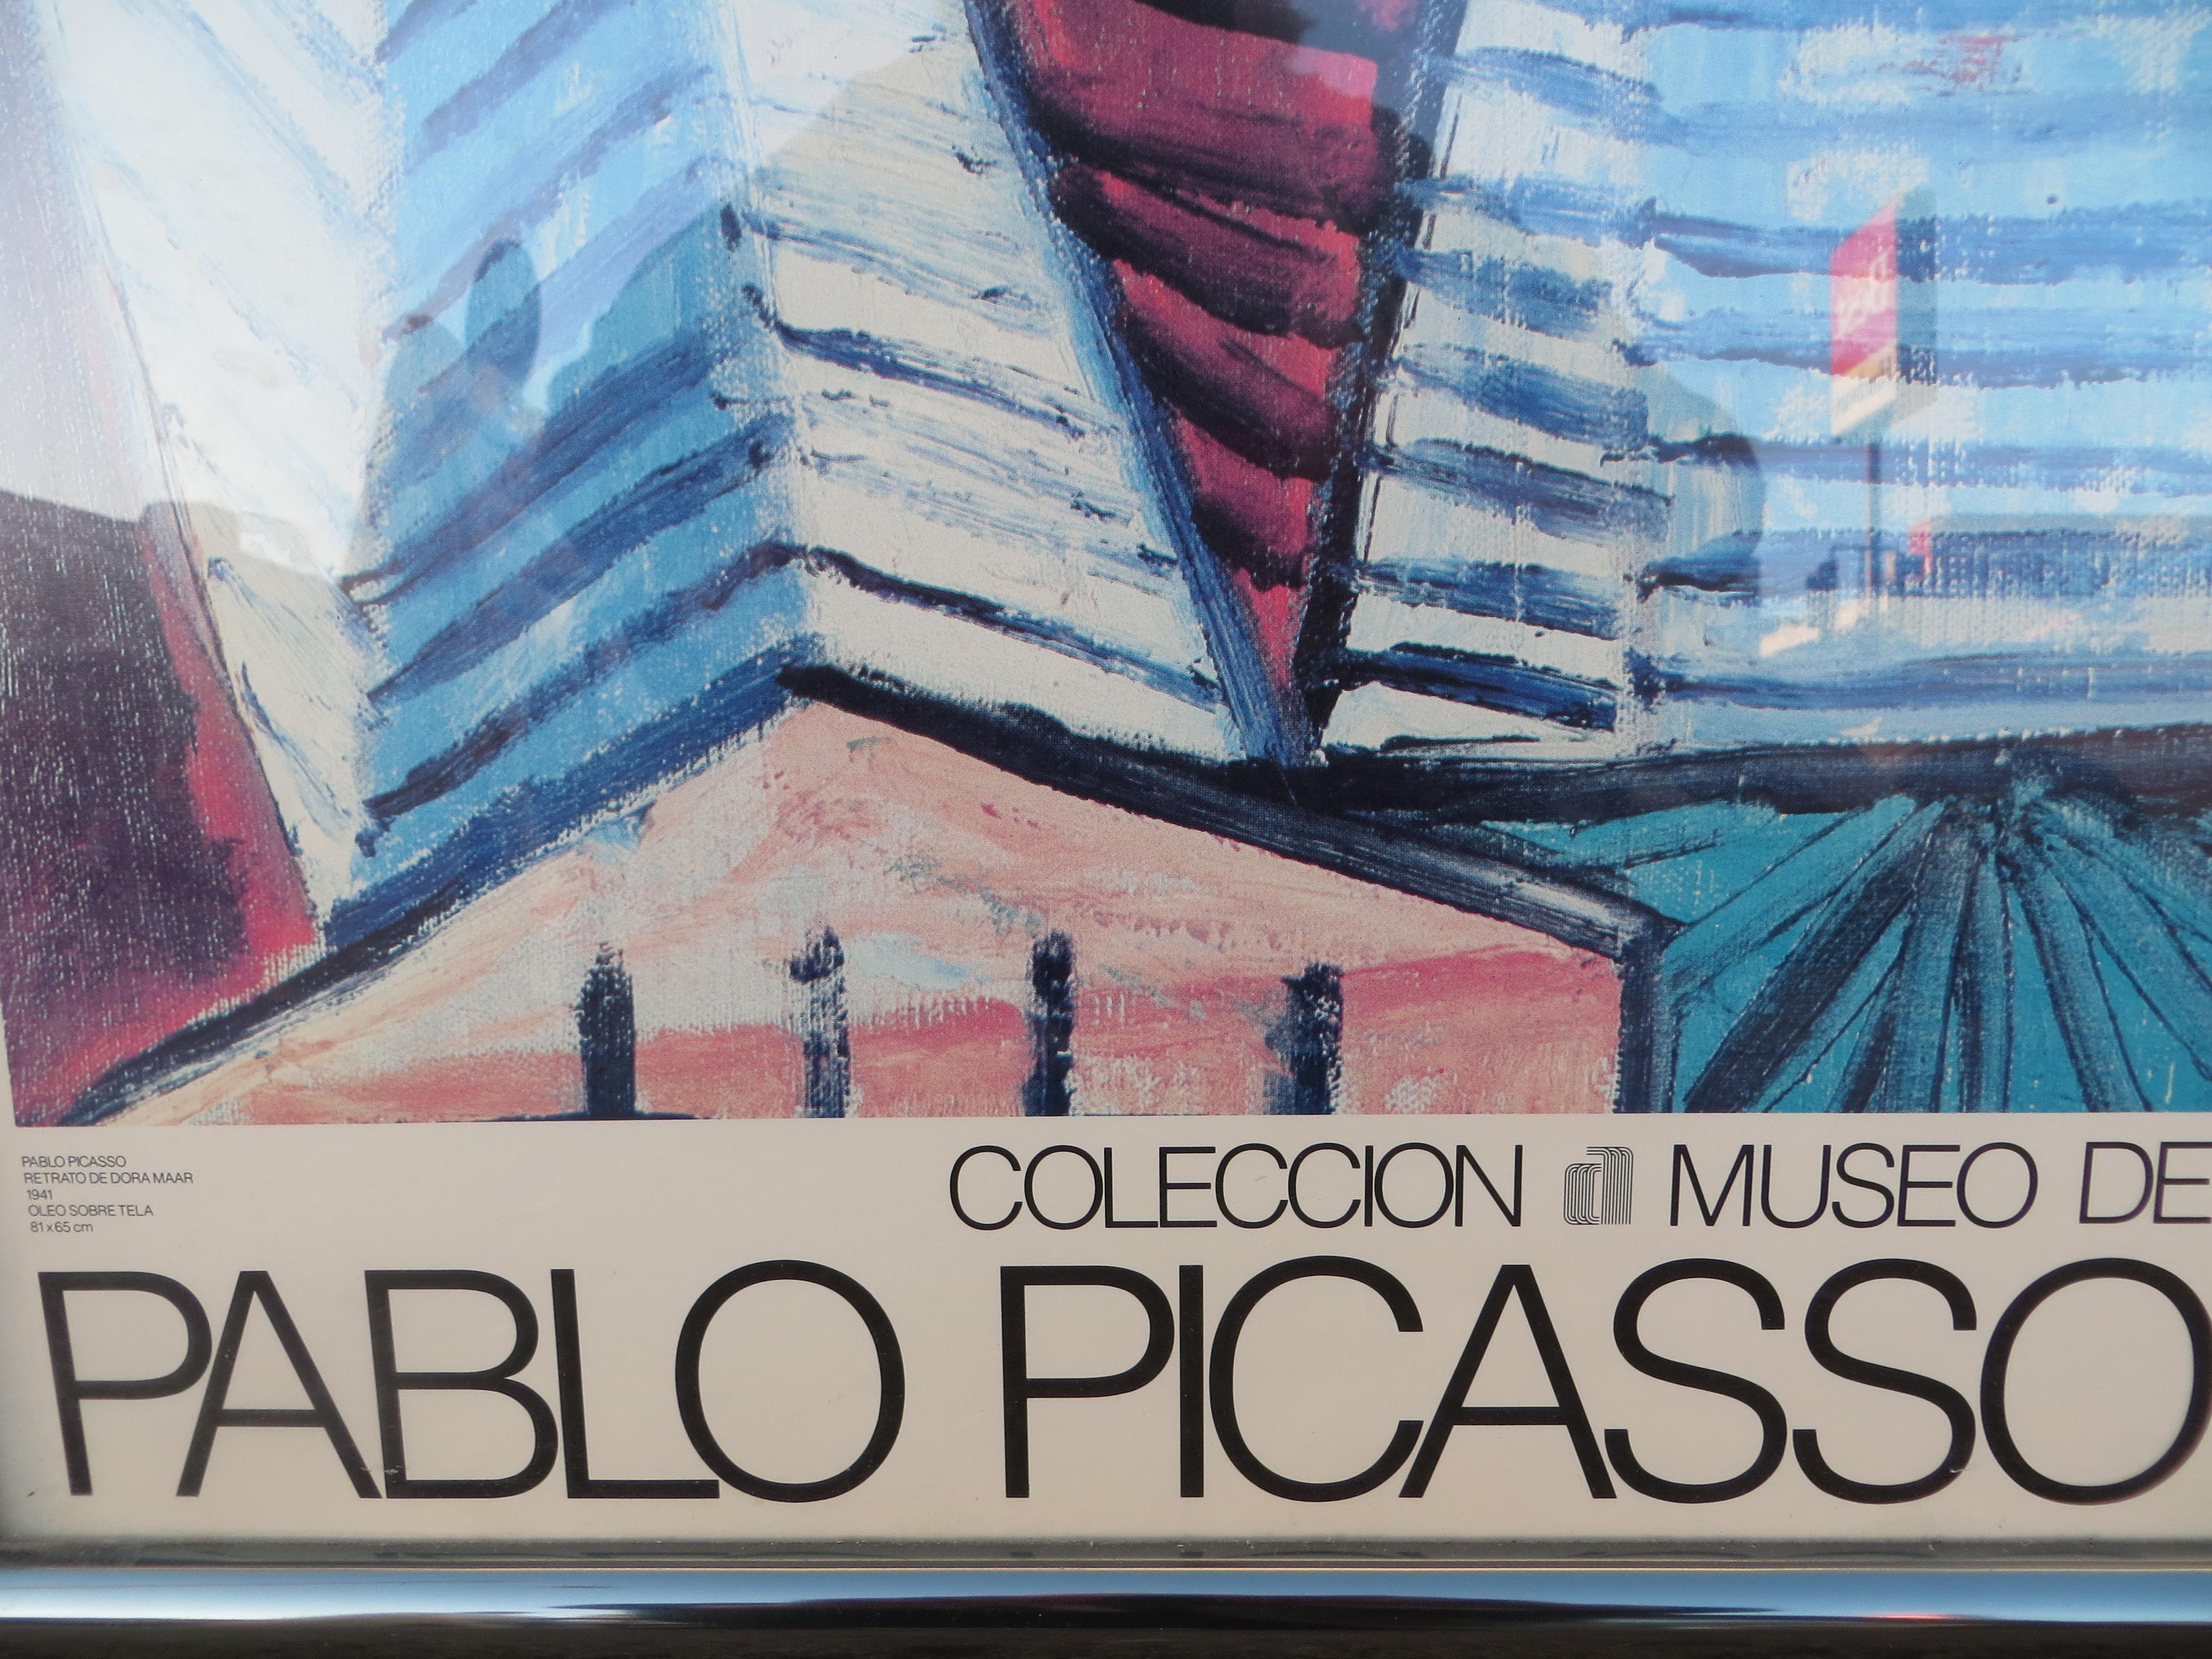 Pablo Picasso exhibition poster - Dora Maar - print of the Museo Del Arte Contemporaneo de Caracas
Rare Picasso lithographic exhibition poster depicting 